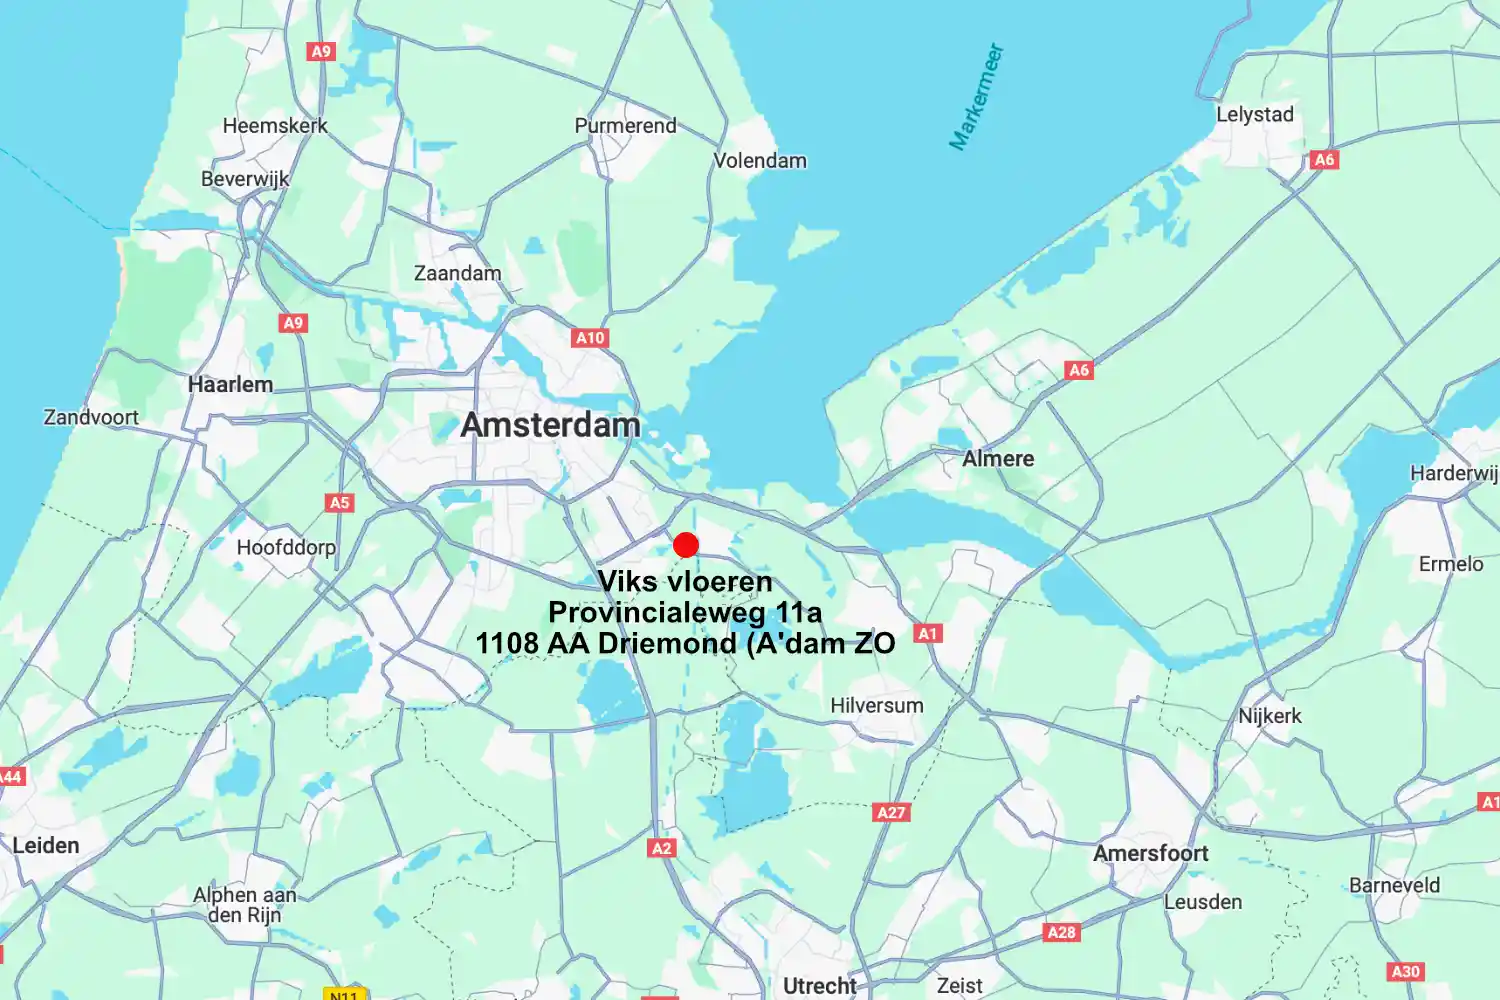 Viks vloeren Driemond (Amsterdam ZO) passie voor laminaat